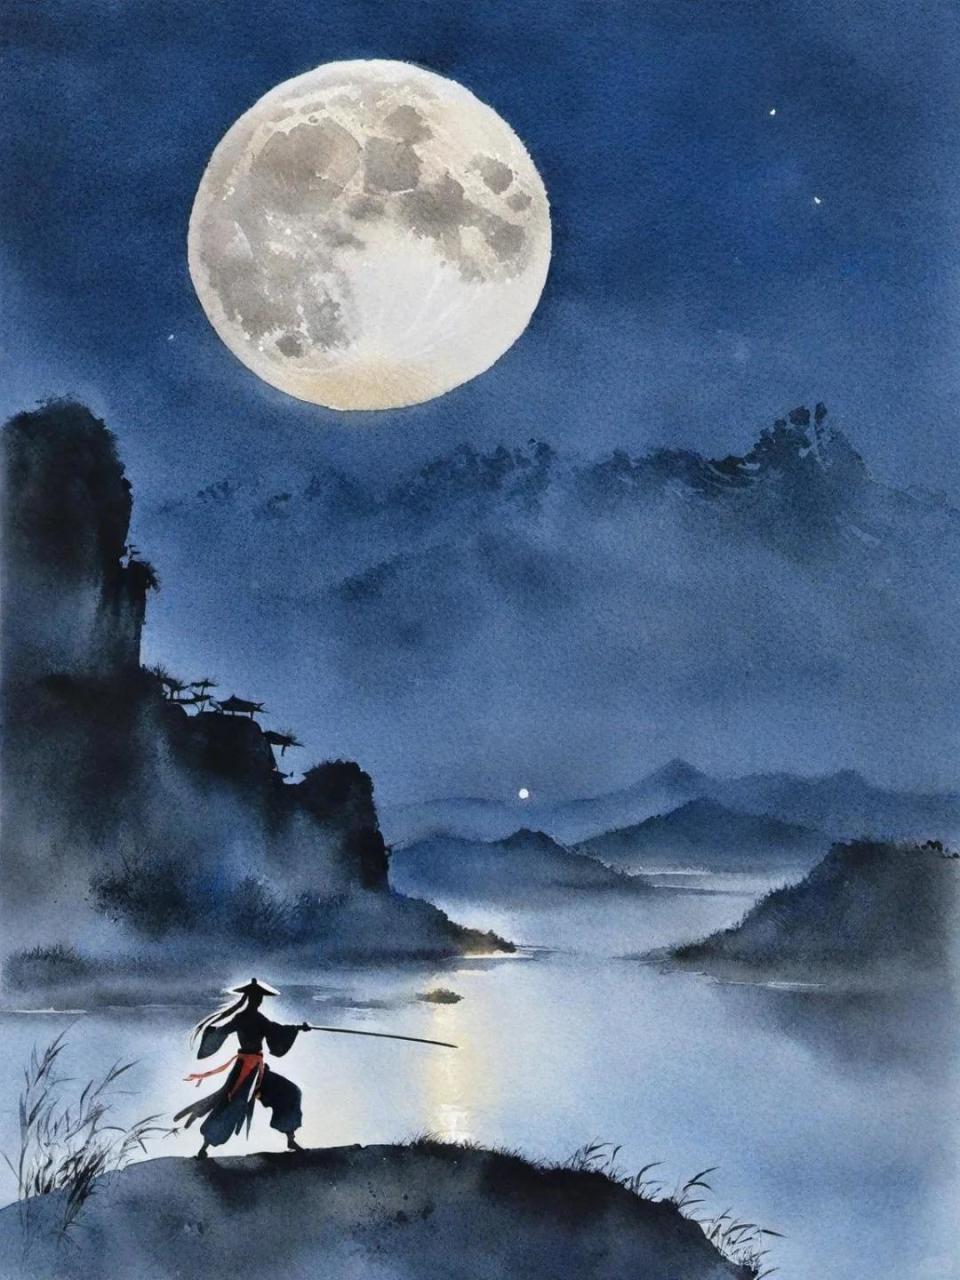 丘处机描绘了一幅深夜湖畔月色如霭的意境,借由这幽静而又神秘的